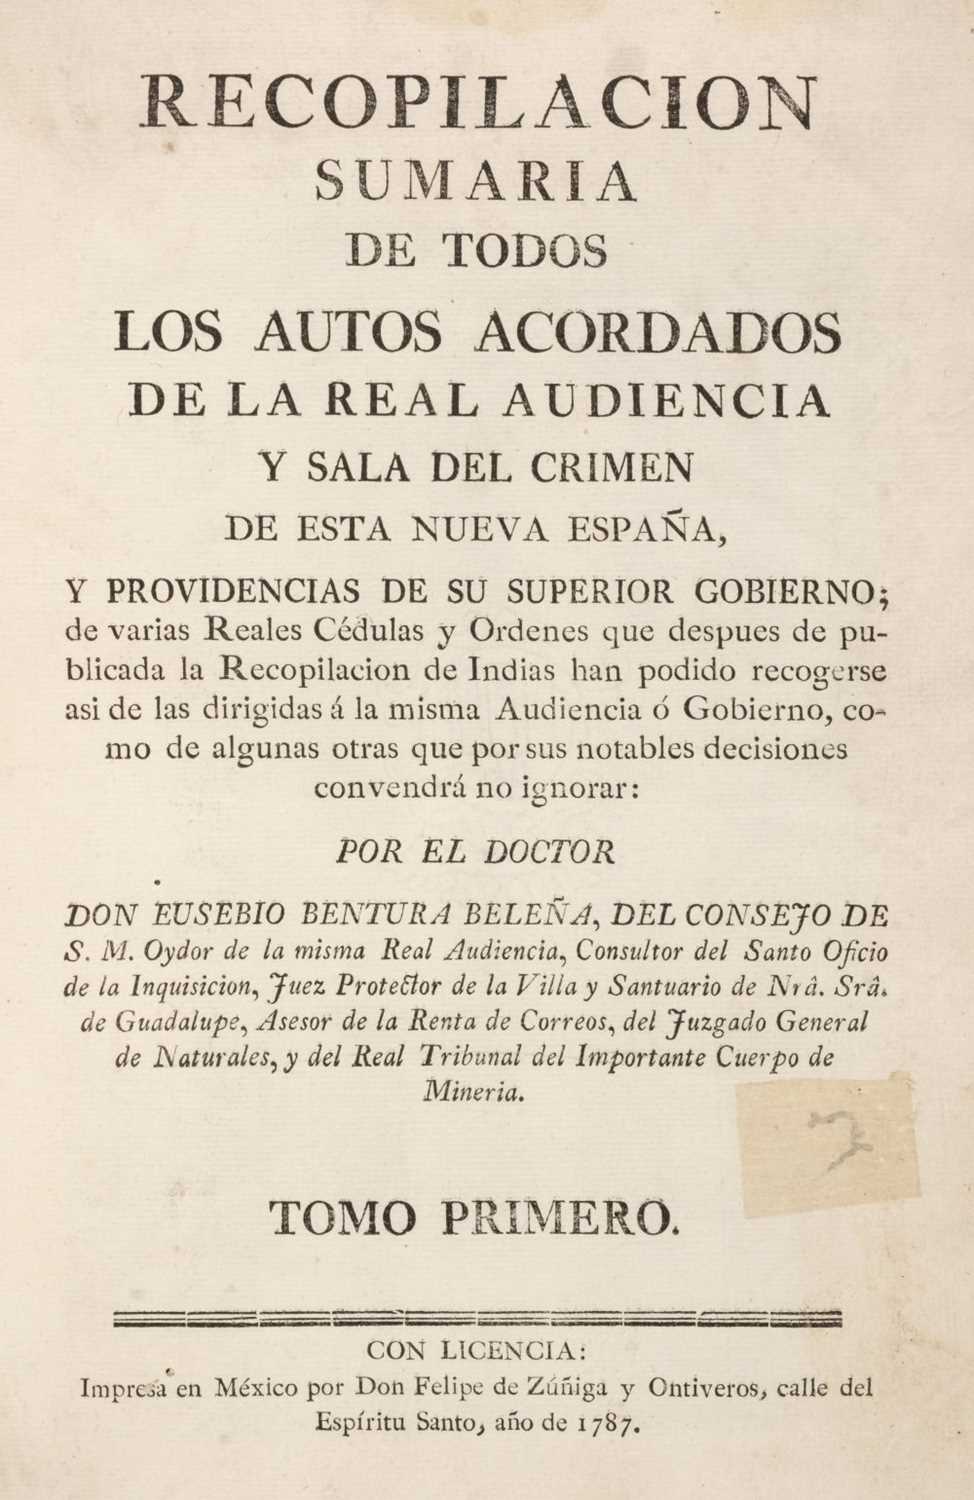 Lot 75 - Bentura Beleña (Eusebio). Recopilacion Sumaria de todos los Autos Acordados, 1787